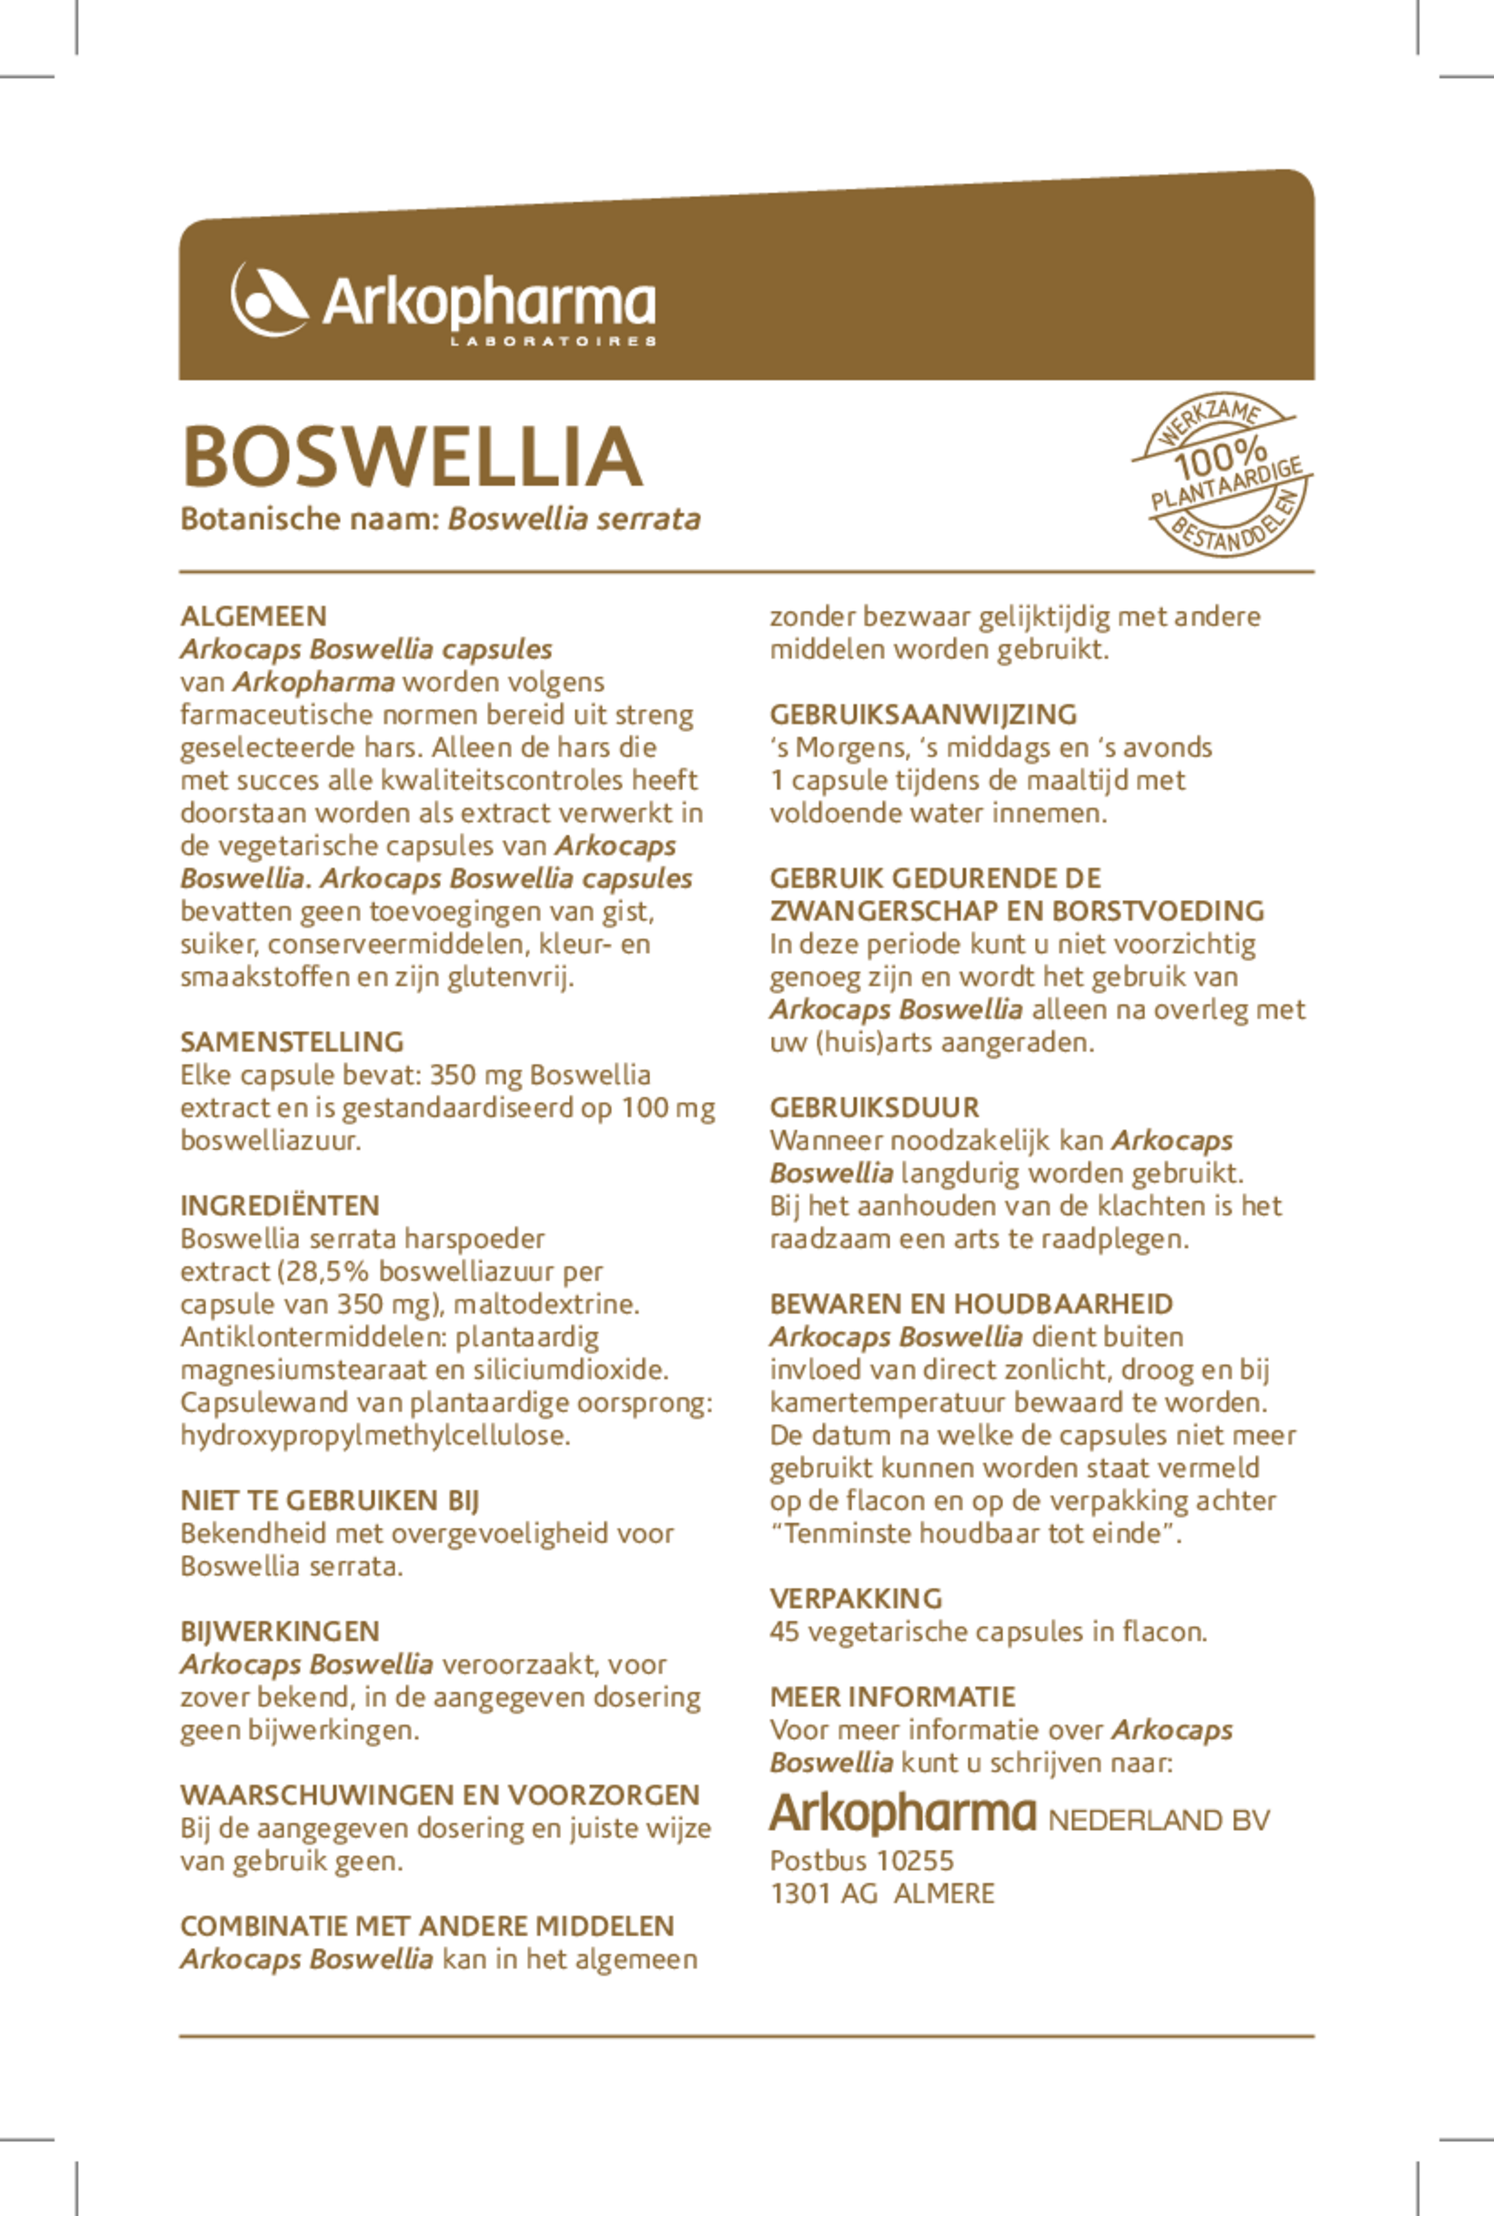 Boswellia Capsules afbeelding van document #1, gebruiksaanwijzing